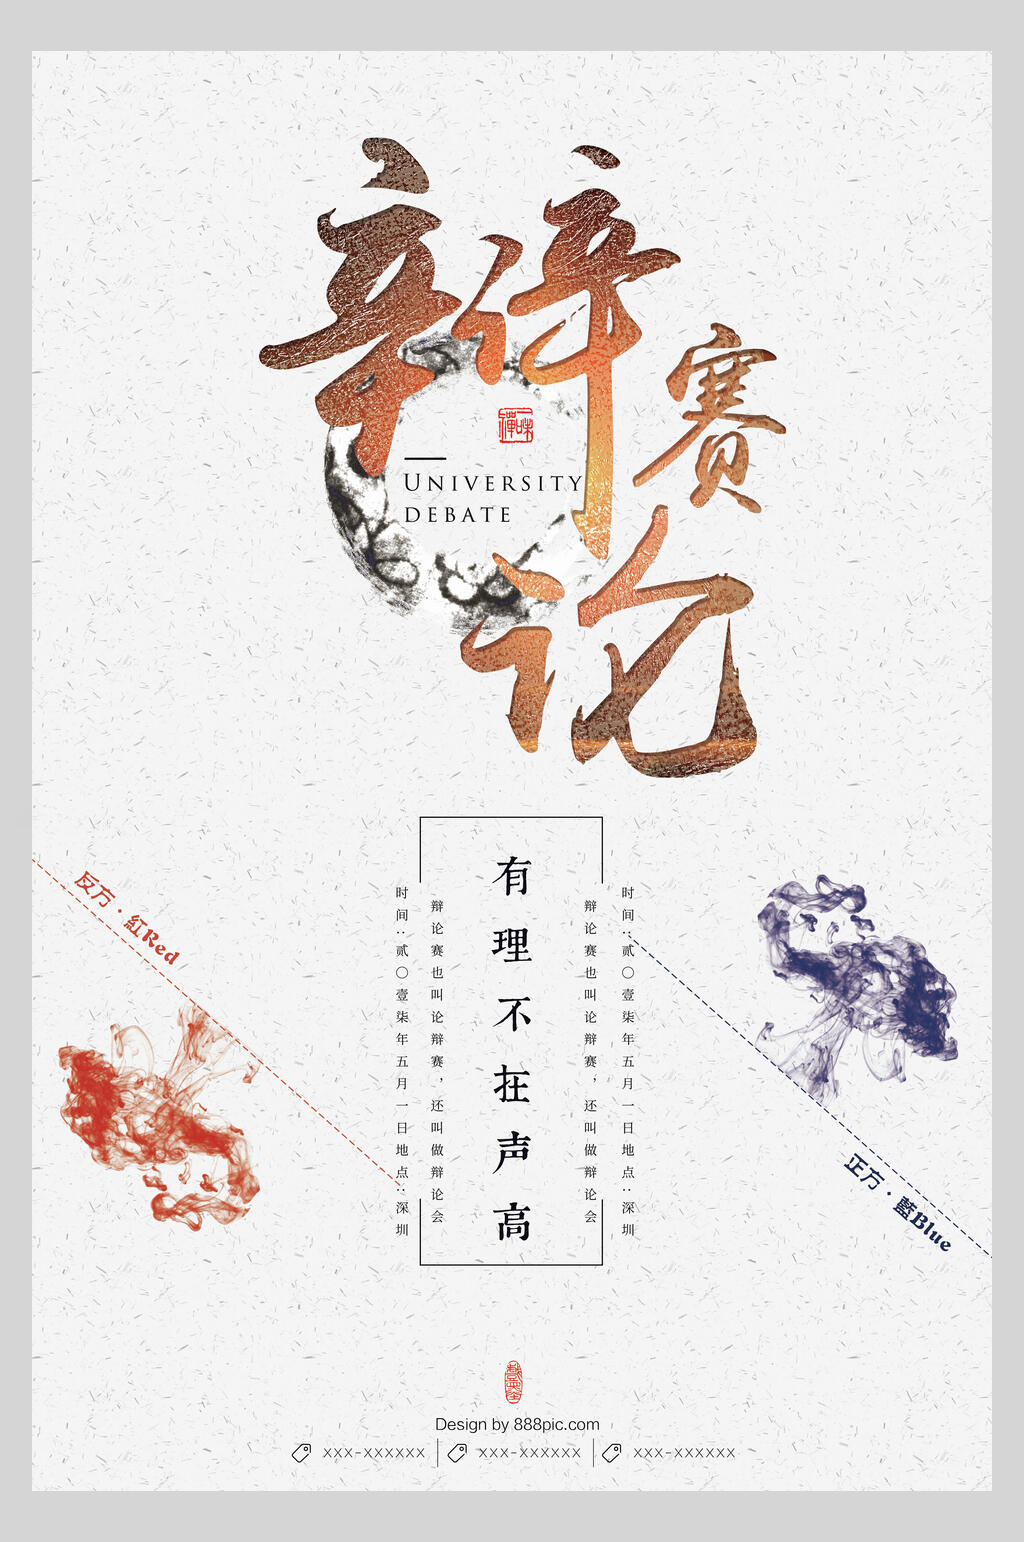 中国风辩论赛主题宣传海报模板下载